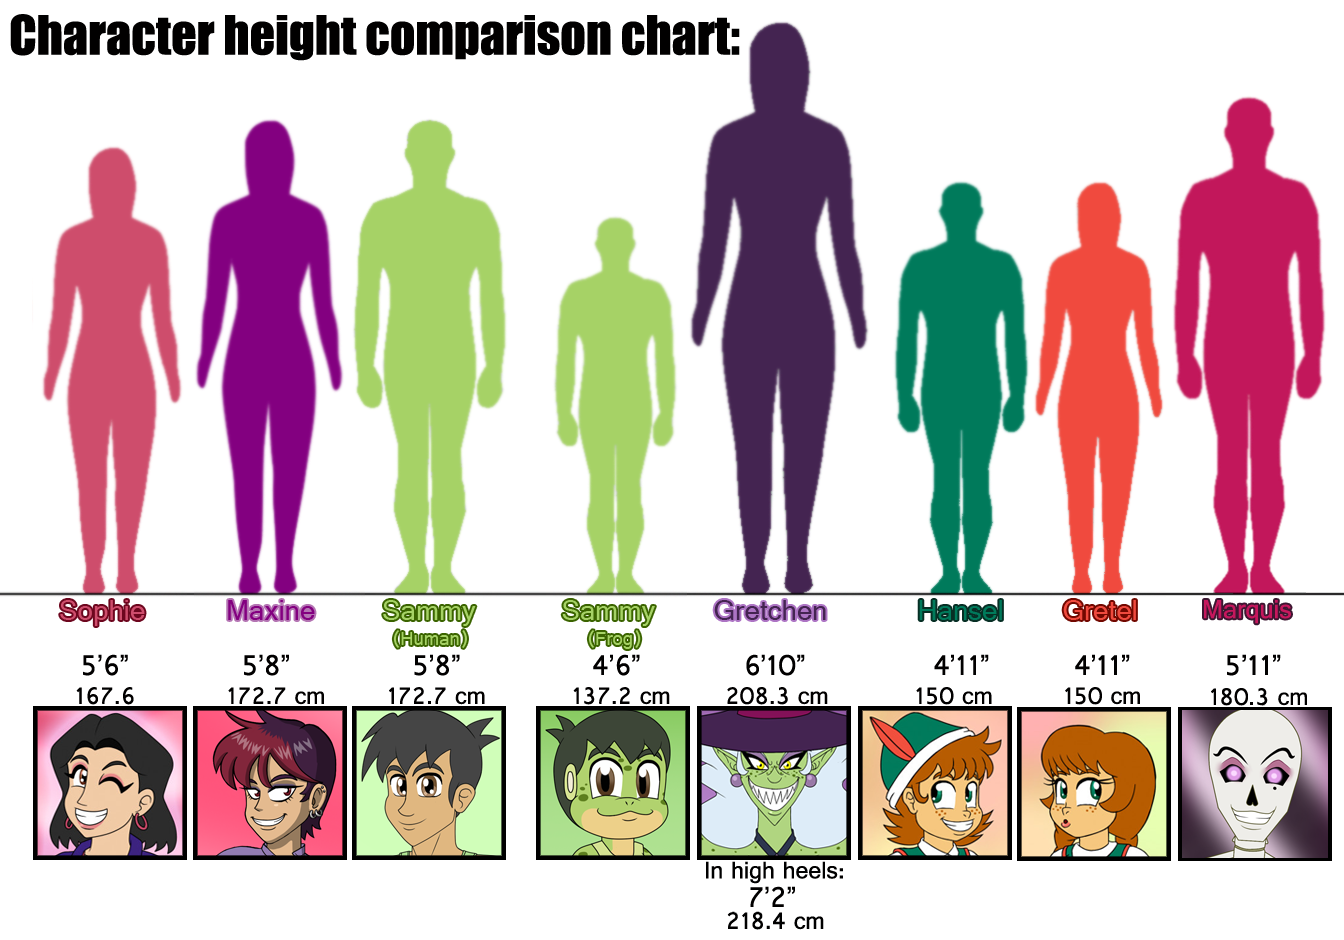 Height Comparison Chart. Height Comparison characters. Character height Chart. Comparing heights.